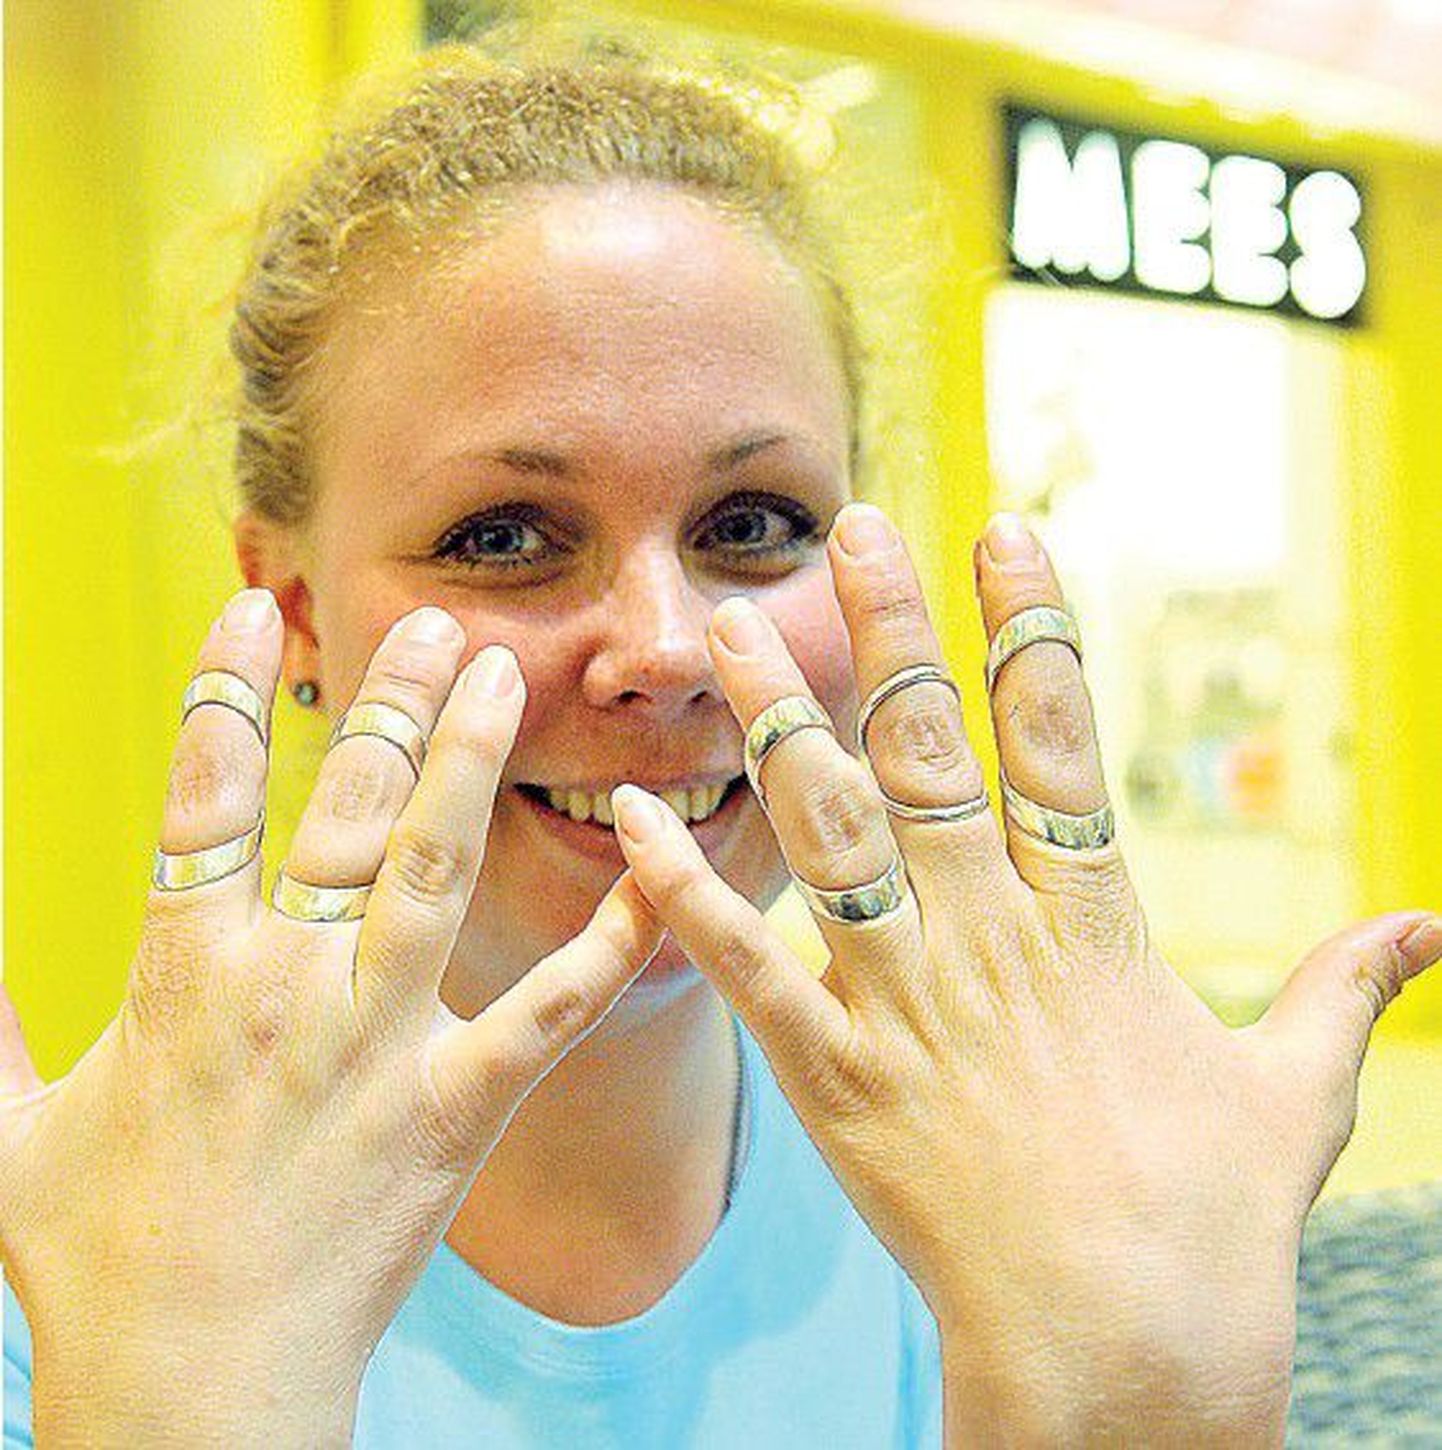 На инфодне, организованном Молодежным ревматологическим союзом Эстонии, шведка Анна Агеберг демонстрирует свои необычные кольца, которые поддерживают пораженные болезнью суставы пальцев и тем самым облегчают страдания больного.